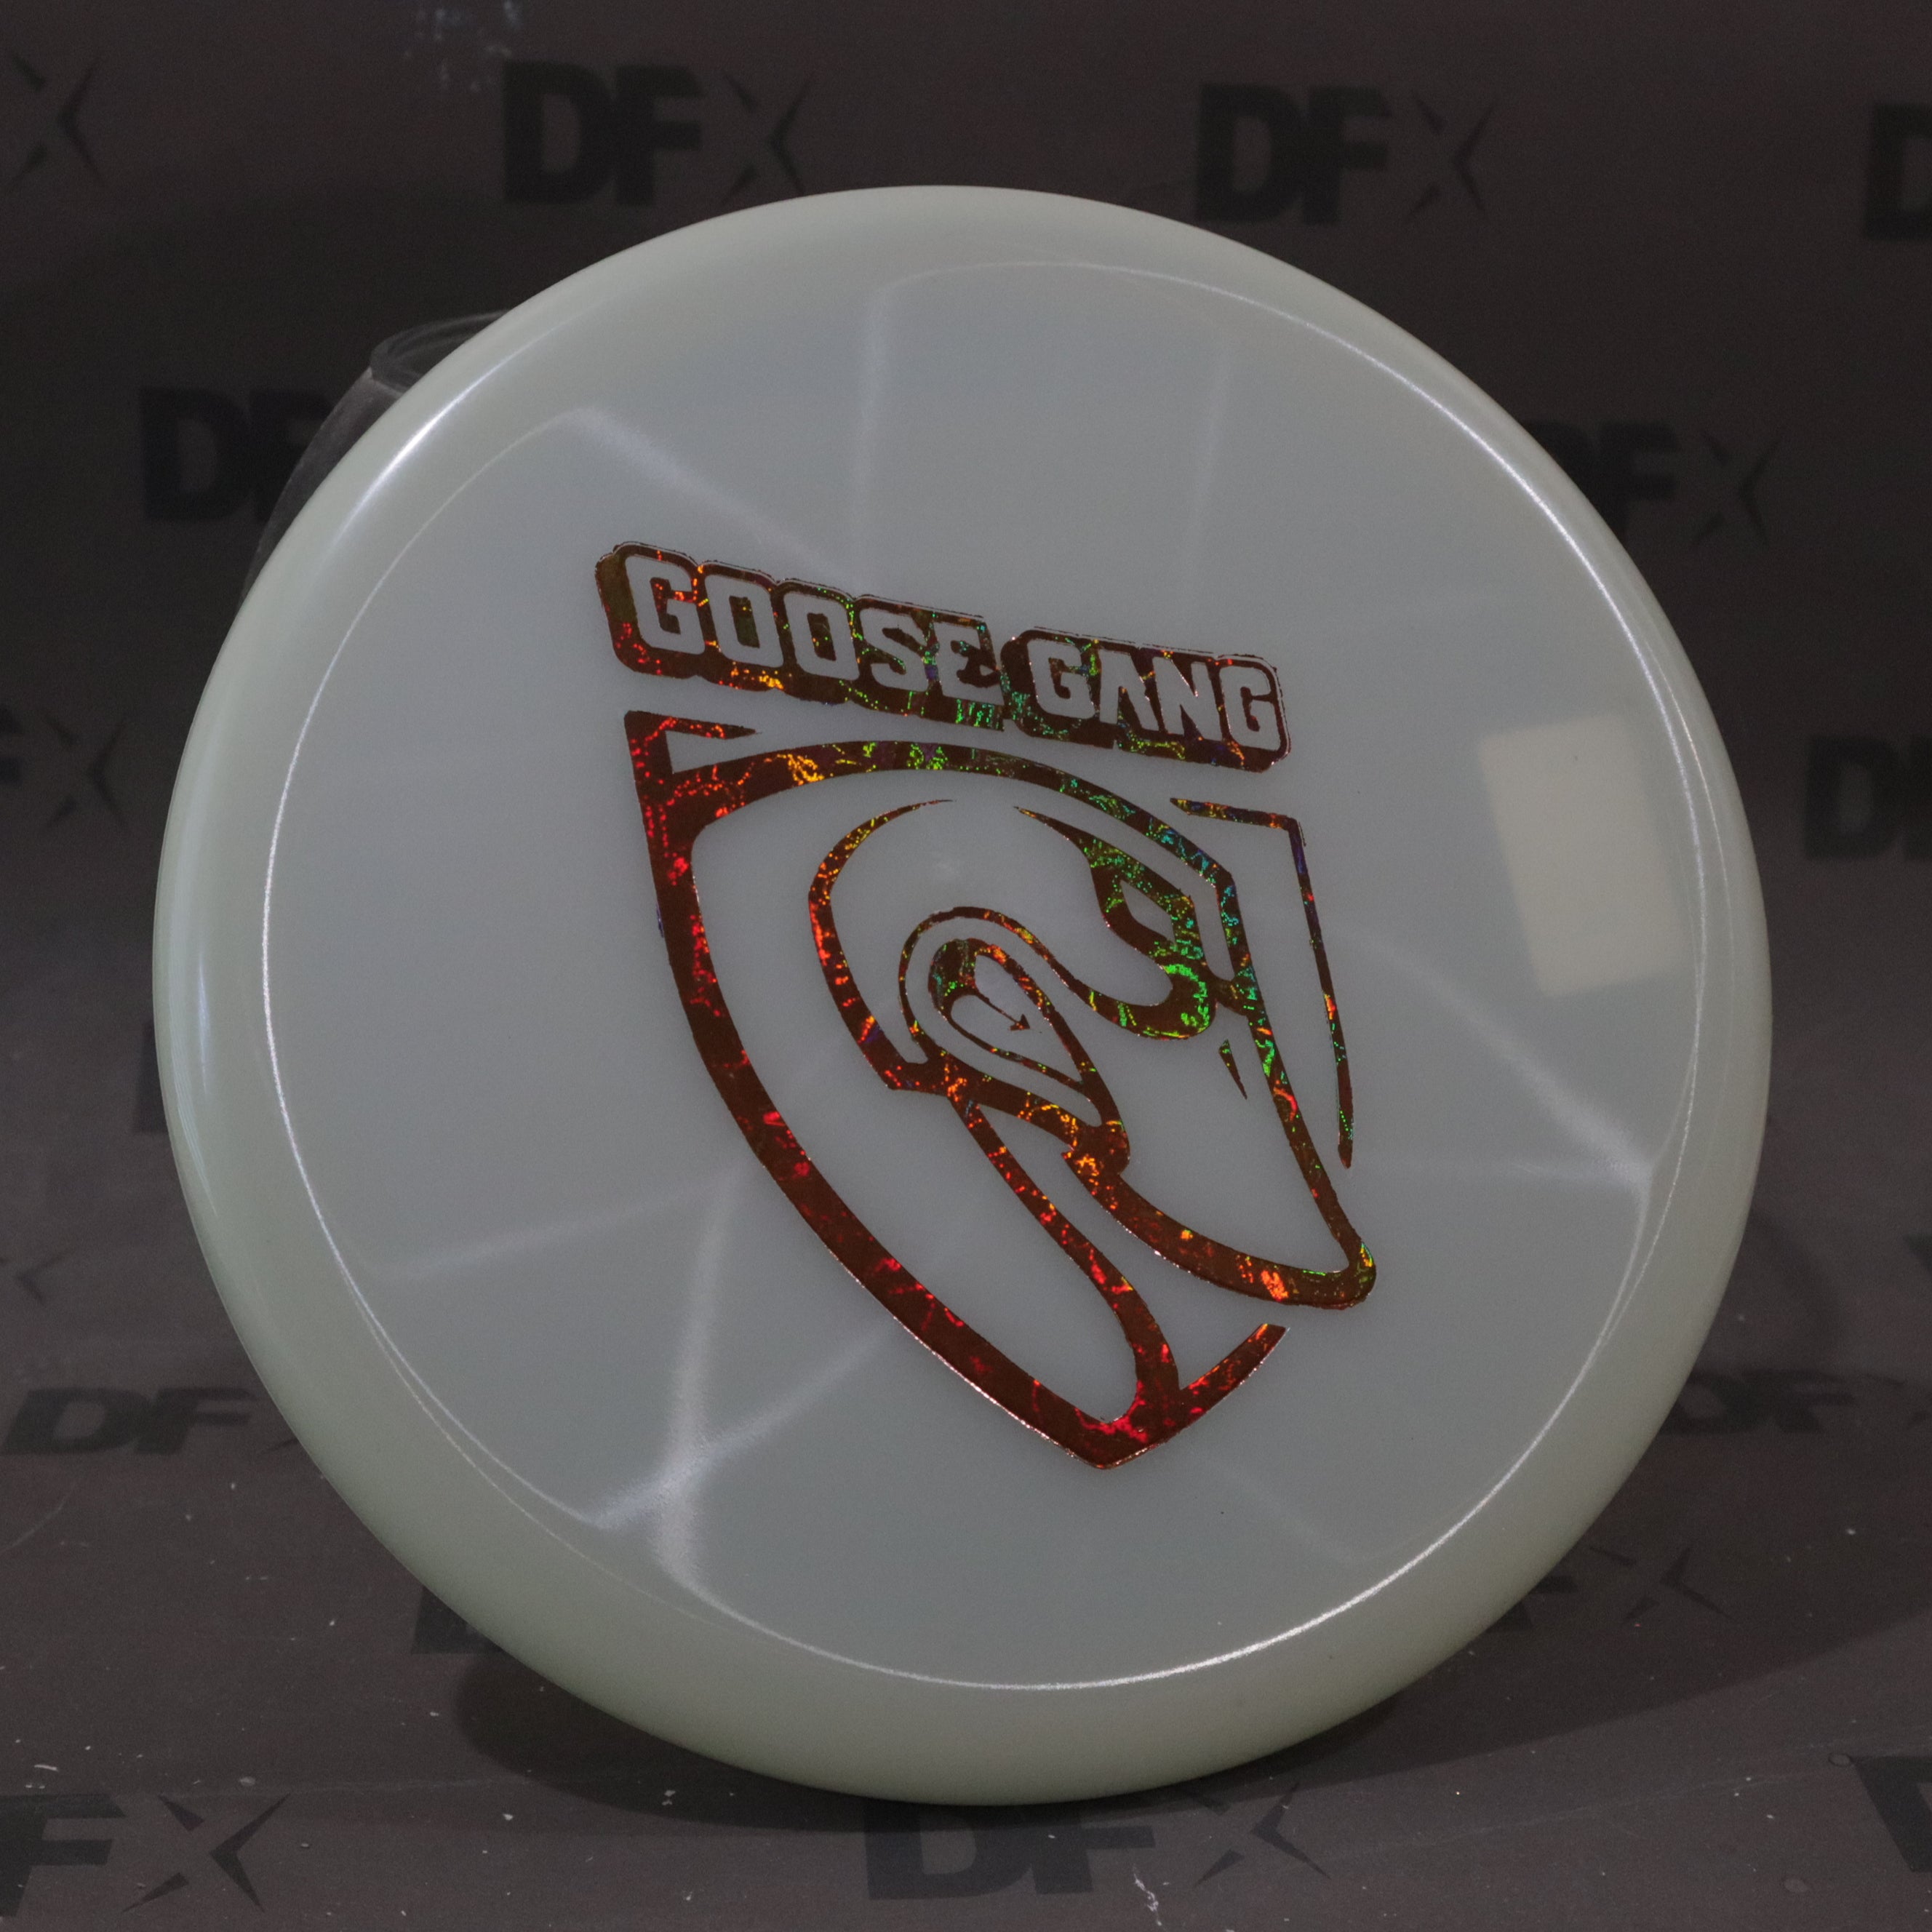 Kastaplast Reko K1 Glow - Goose Gang Shield